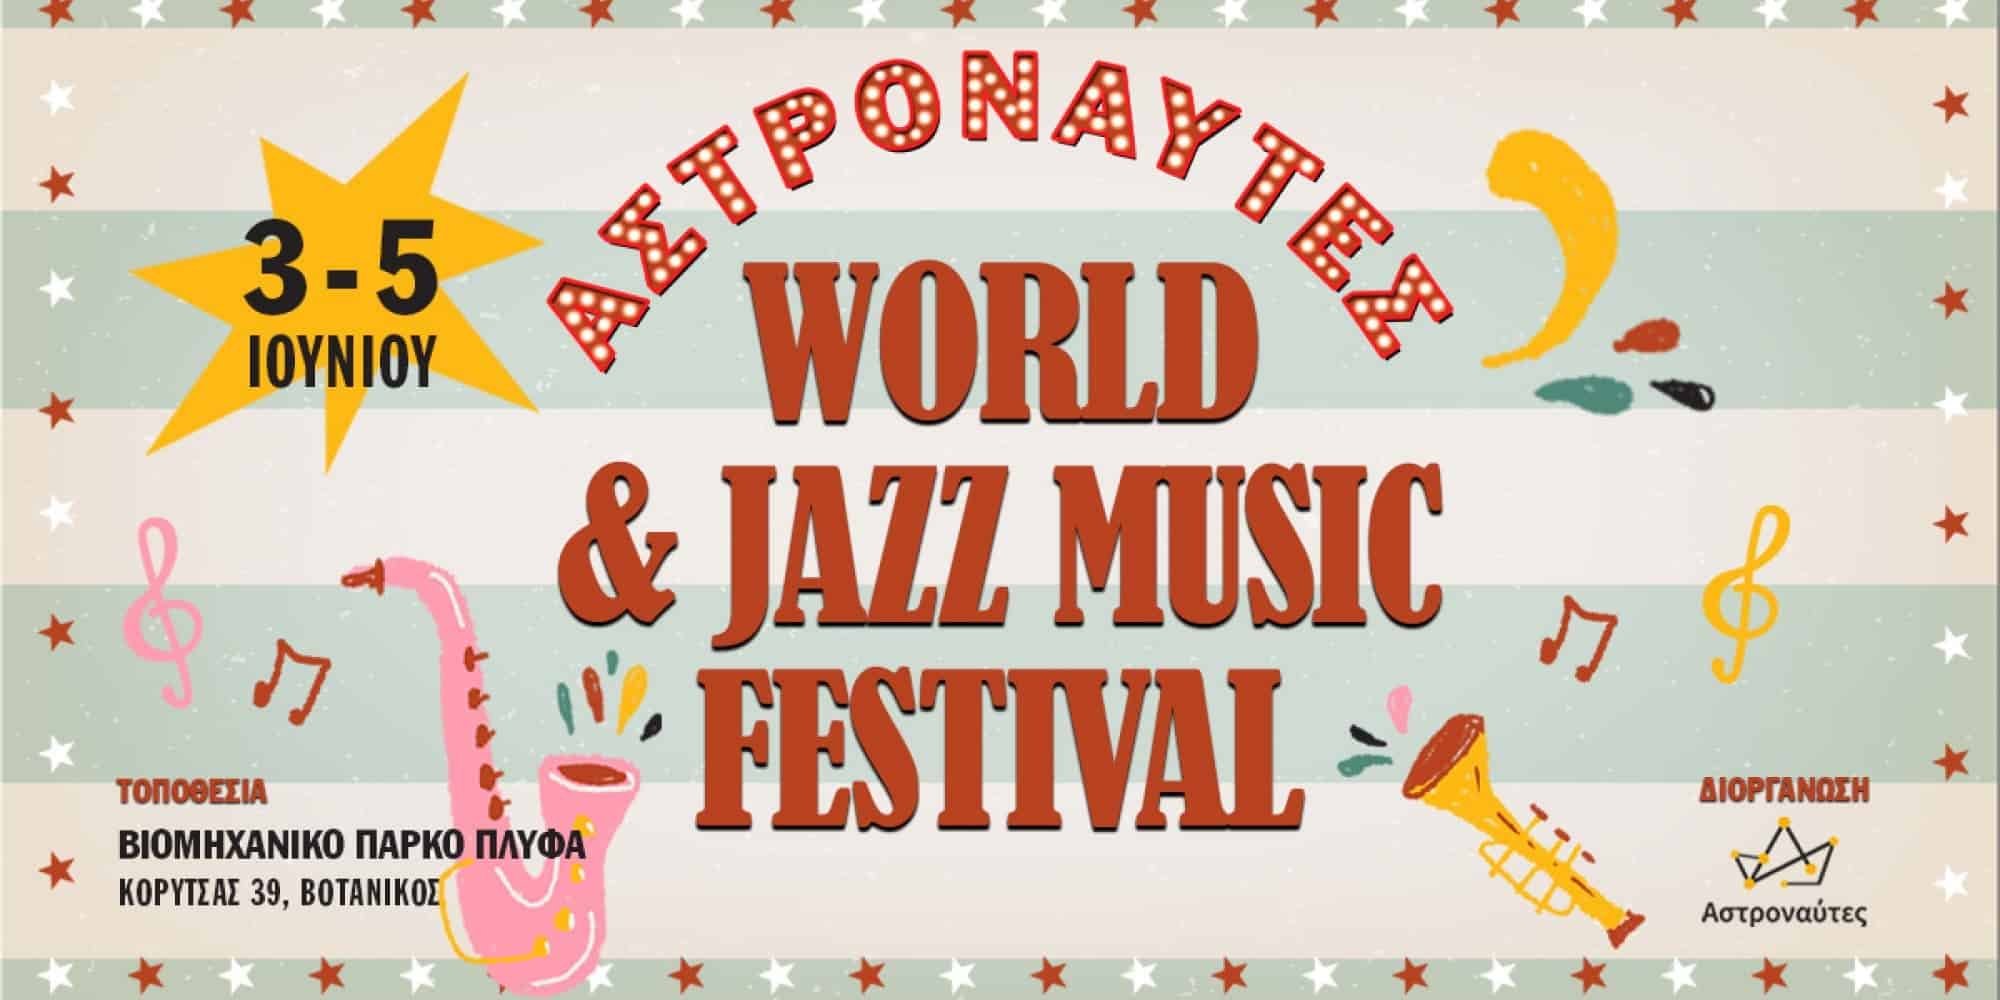 Το φεστιβάλ «Αστροναύτες World & Jazz Music Festival» έρχεται 3-5 Ιουνίου στην ΠΛΥΦΑ